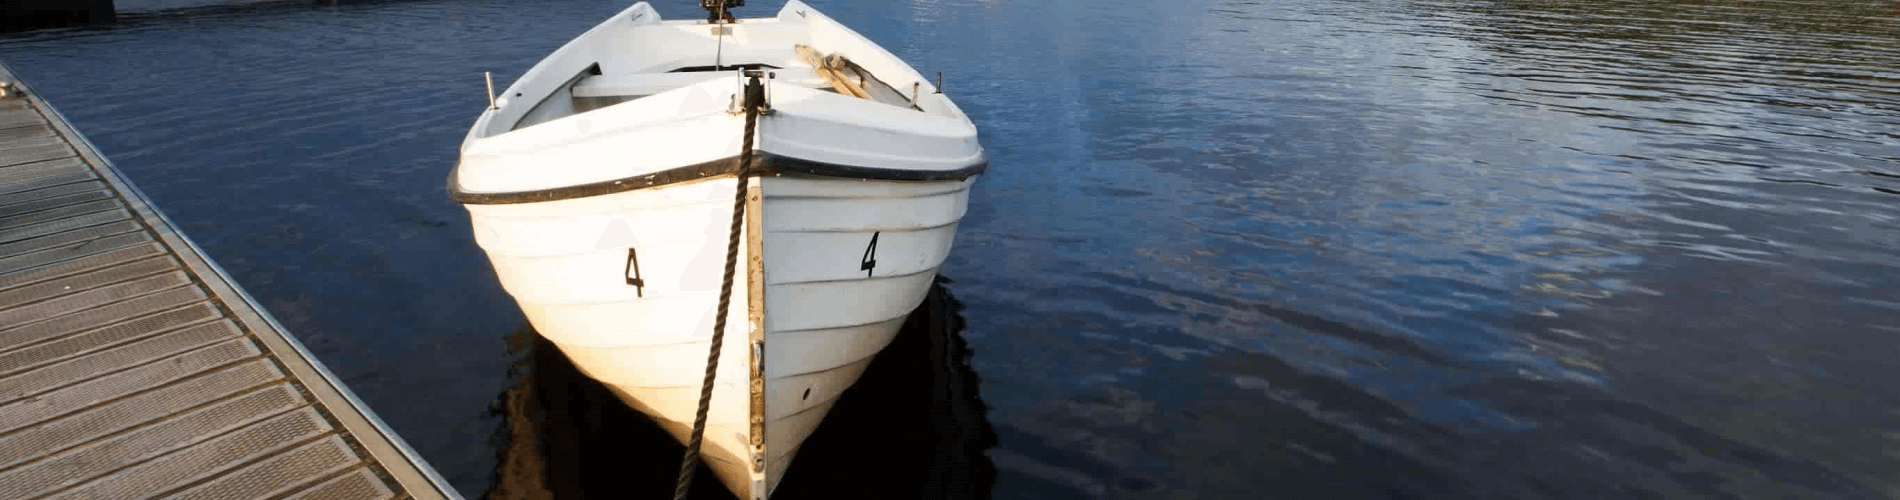 Boat on Kielder reservoir